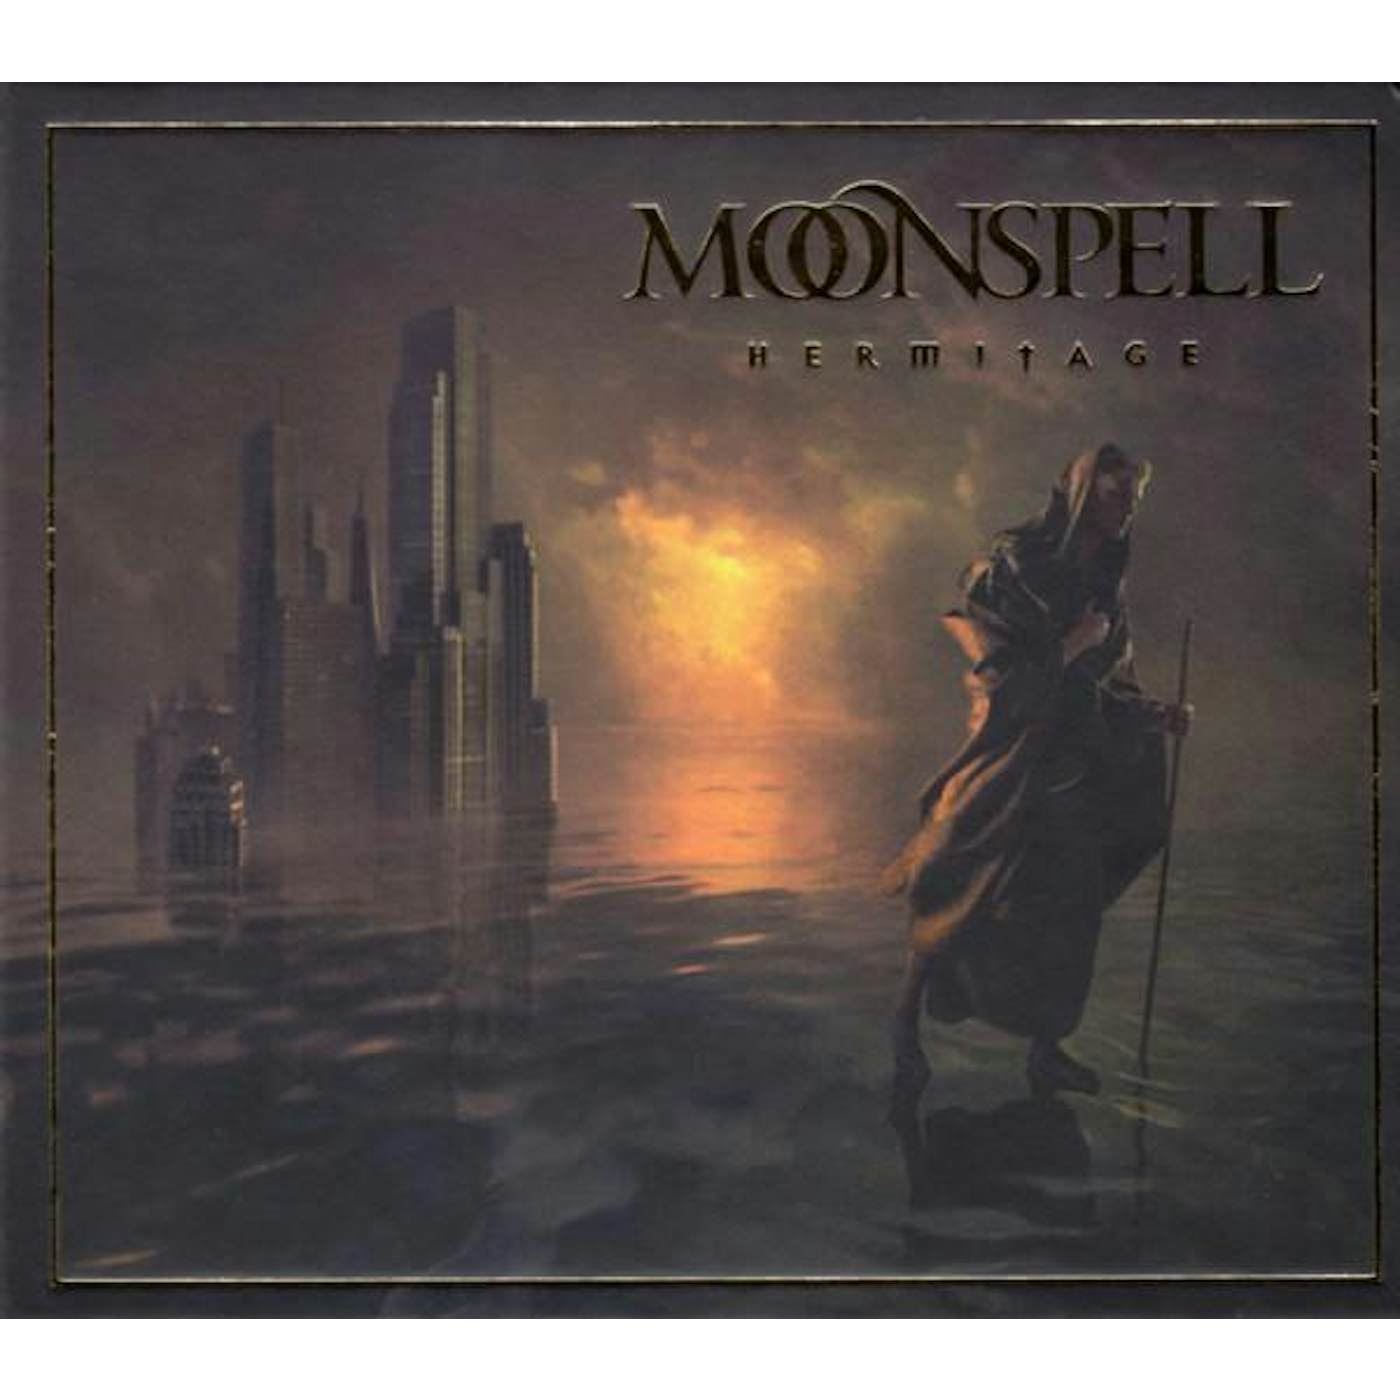 Moonspell HERMITAGE (MEDIABOOK) CD